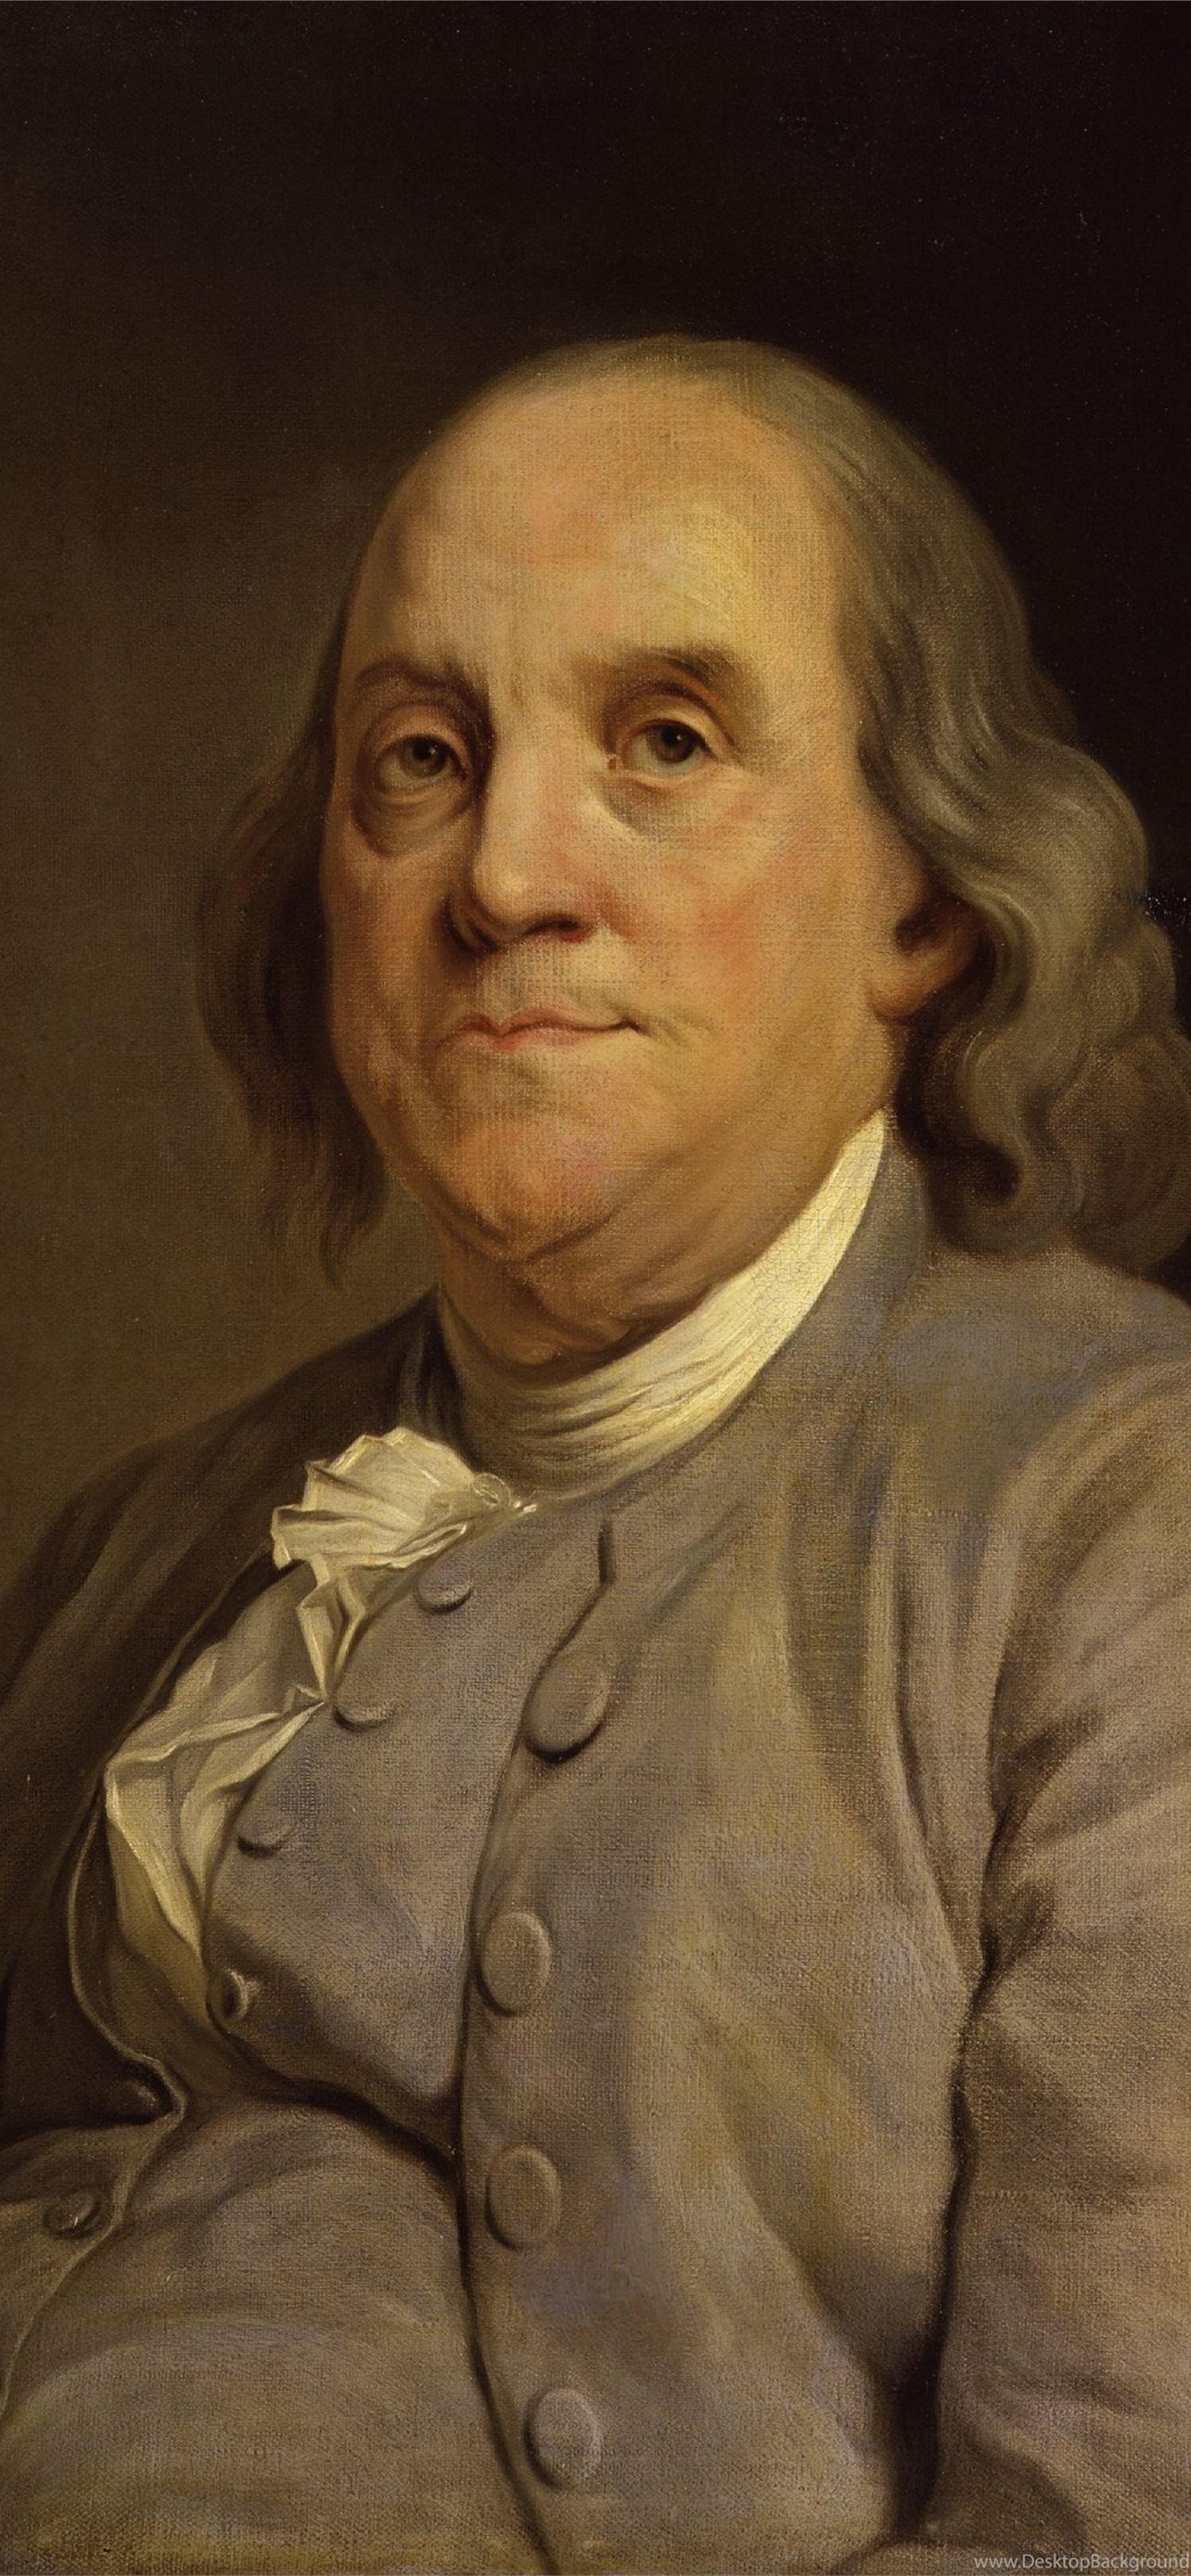 Benjamin Franklin Pictures  Download Free Images on Unsplash